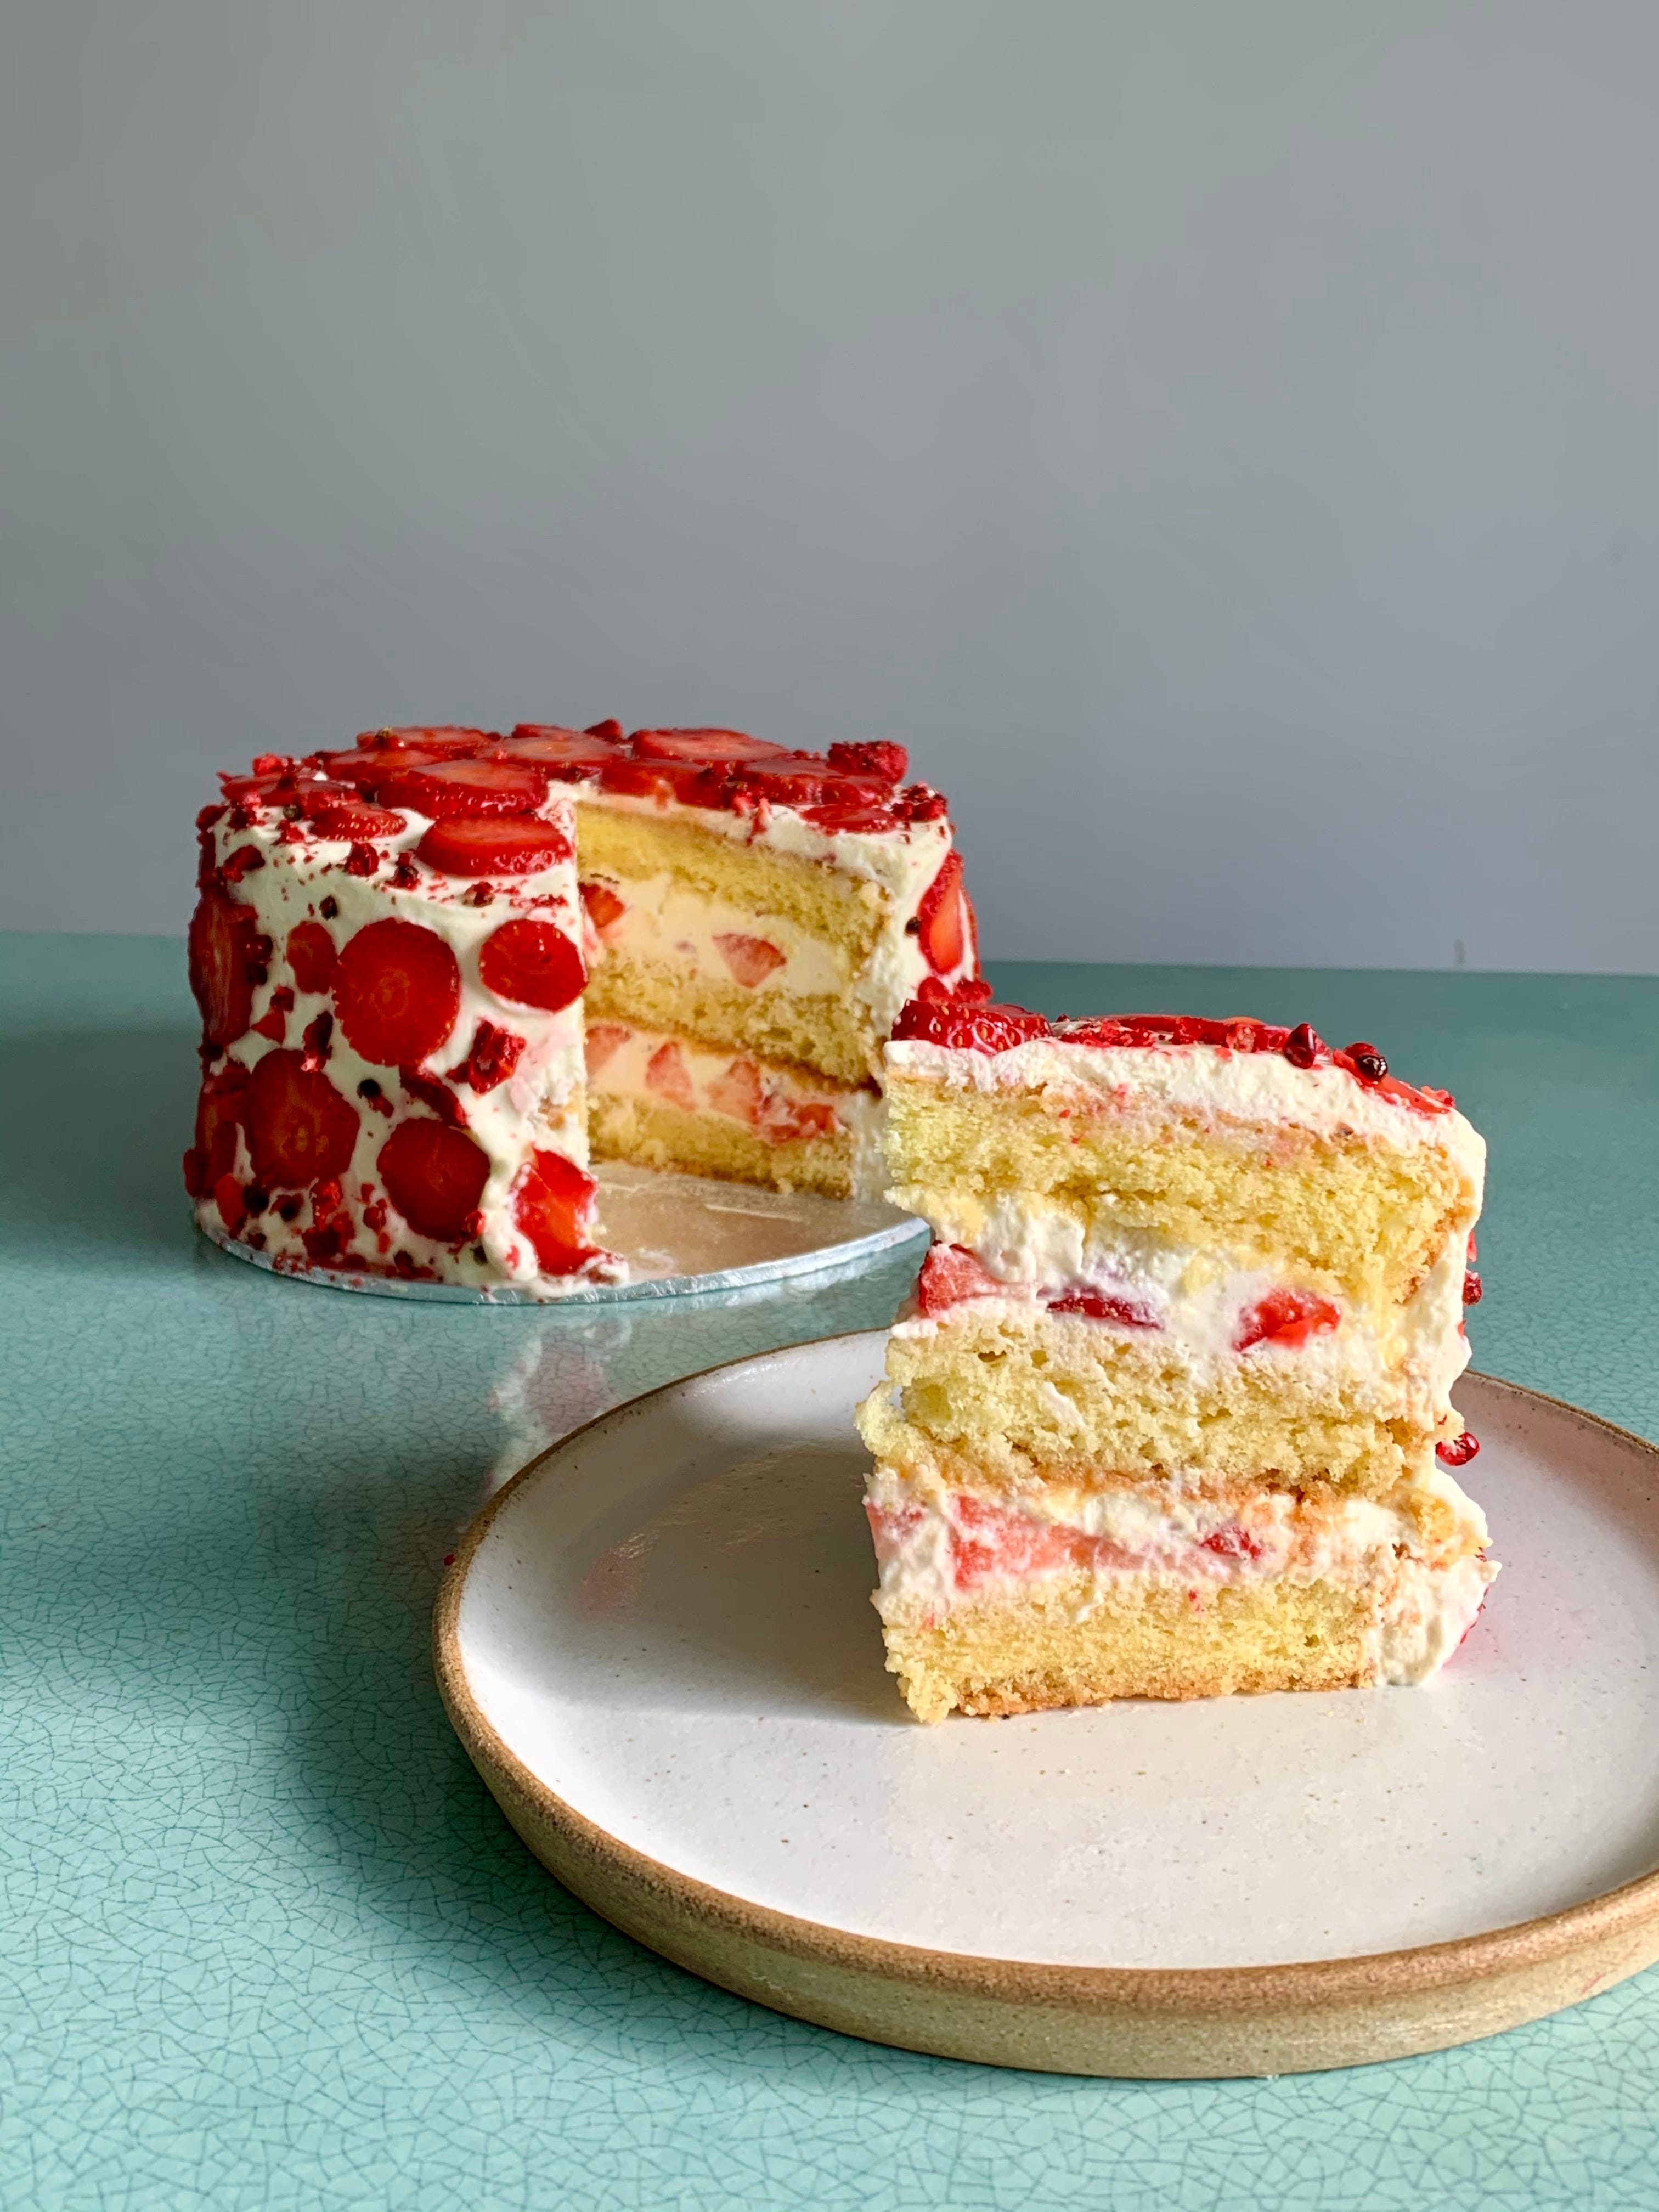 FLUFFY Vanilla Sponge Cake Recipe | The BEST Genoise Sponge Cake - YouTube